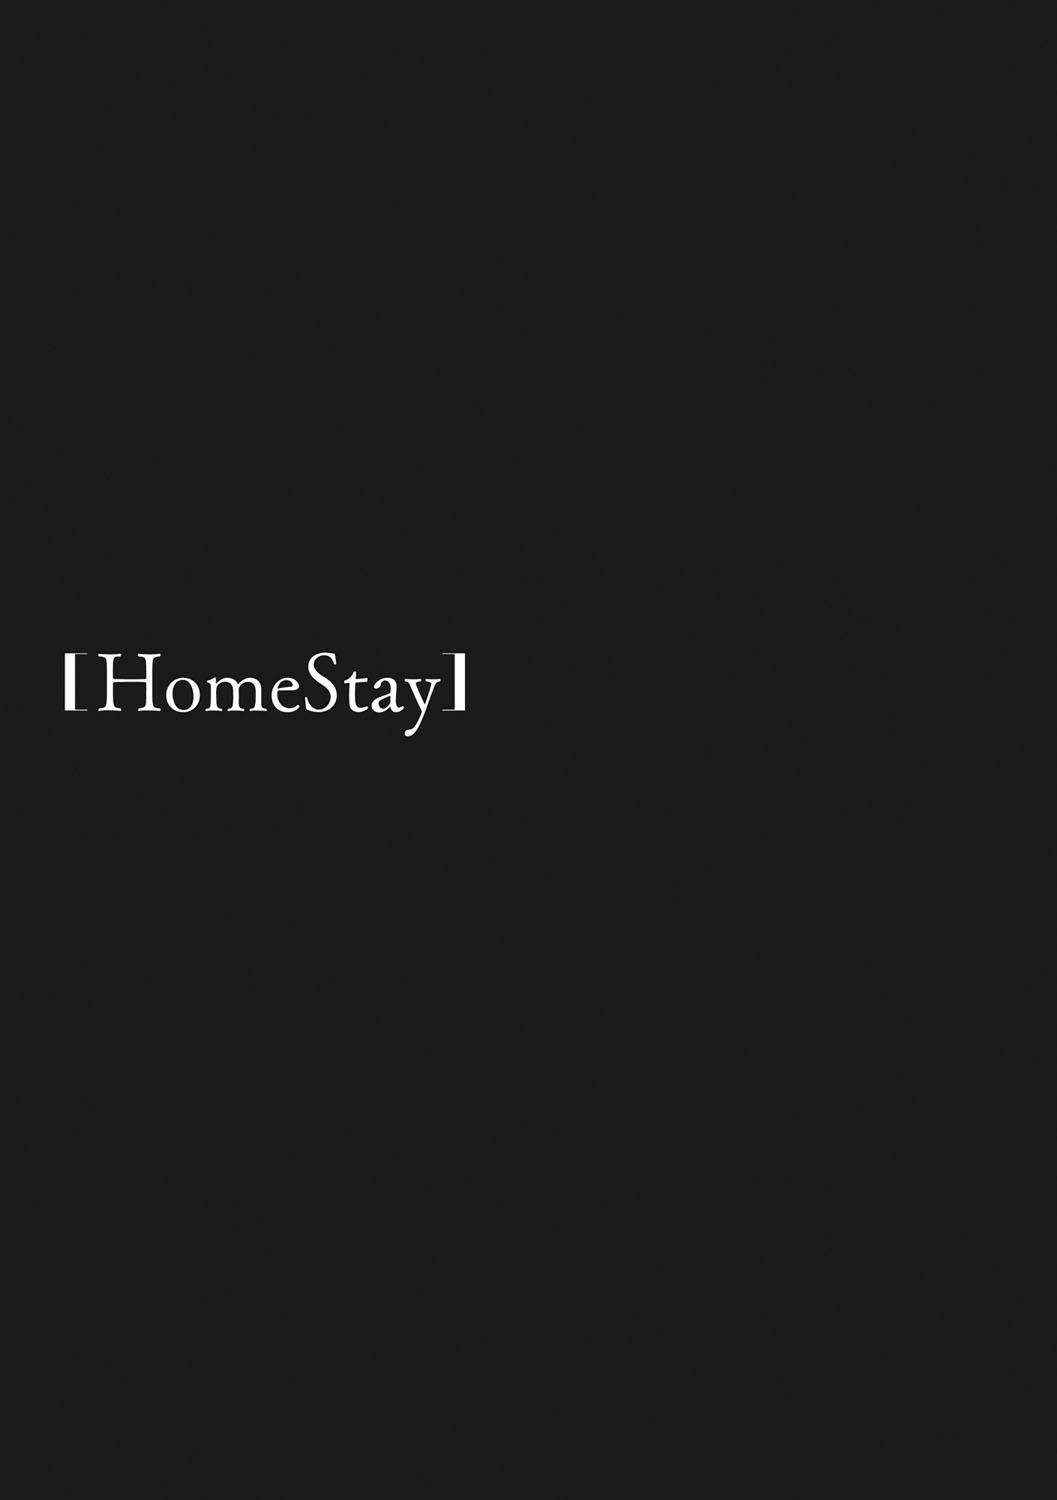 HomeStay 247